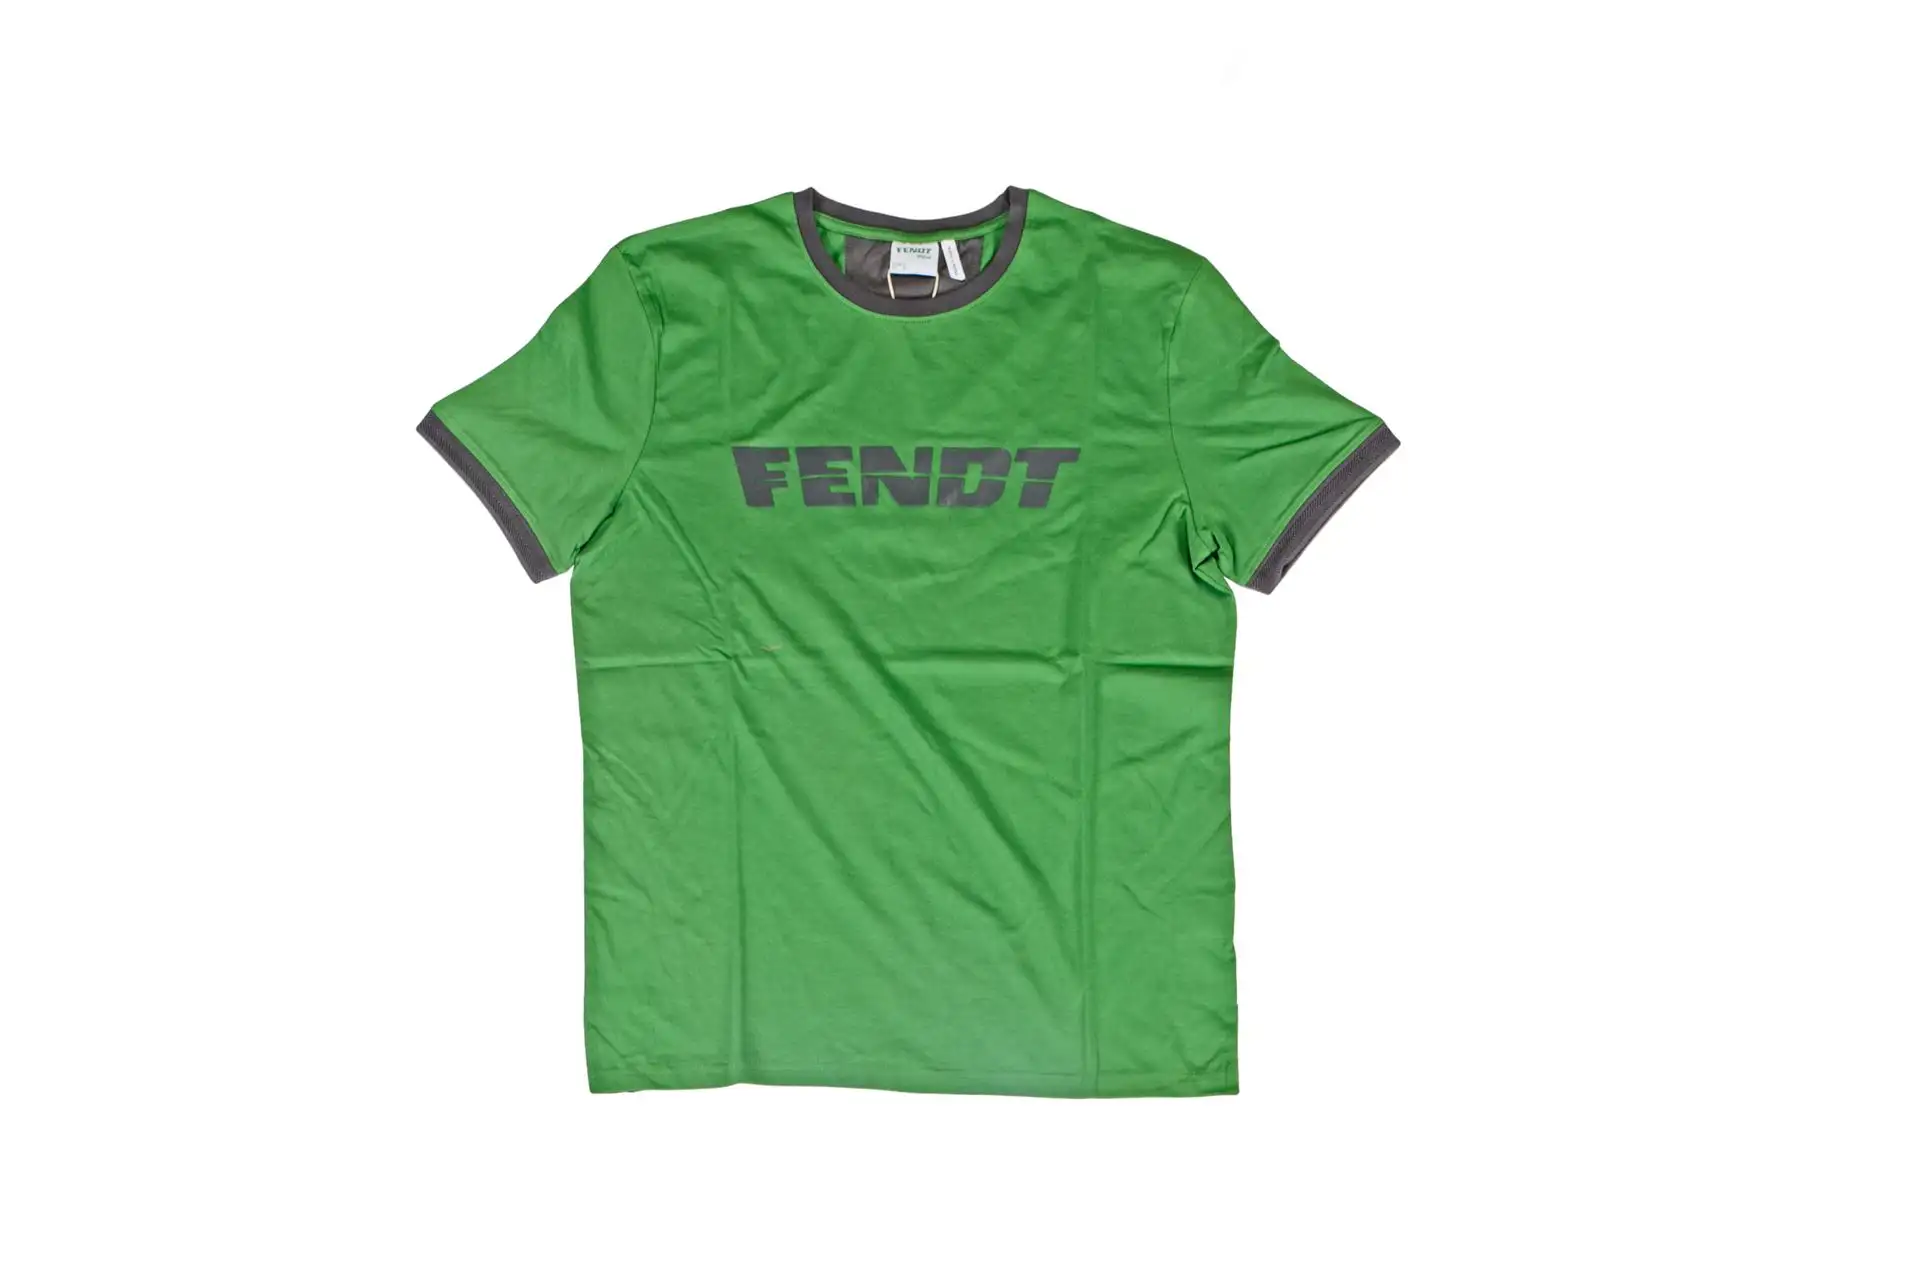 Oryginalna koszulka FENDT w rozmiarze L i kolorze zielonym o numerze katalogowym X991020181000.